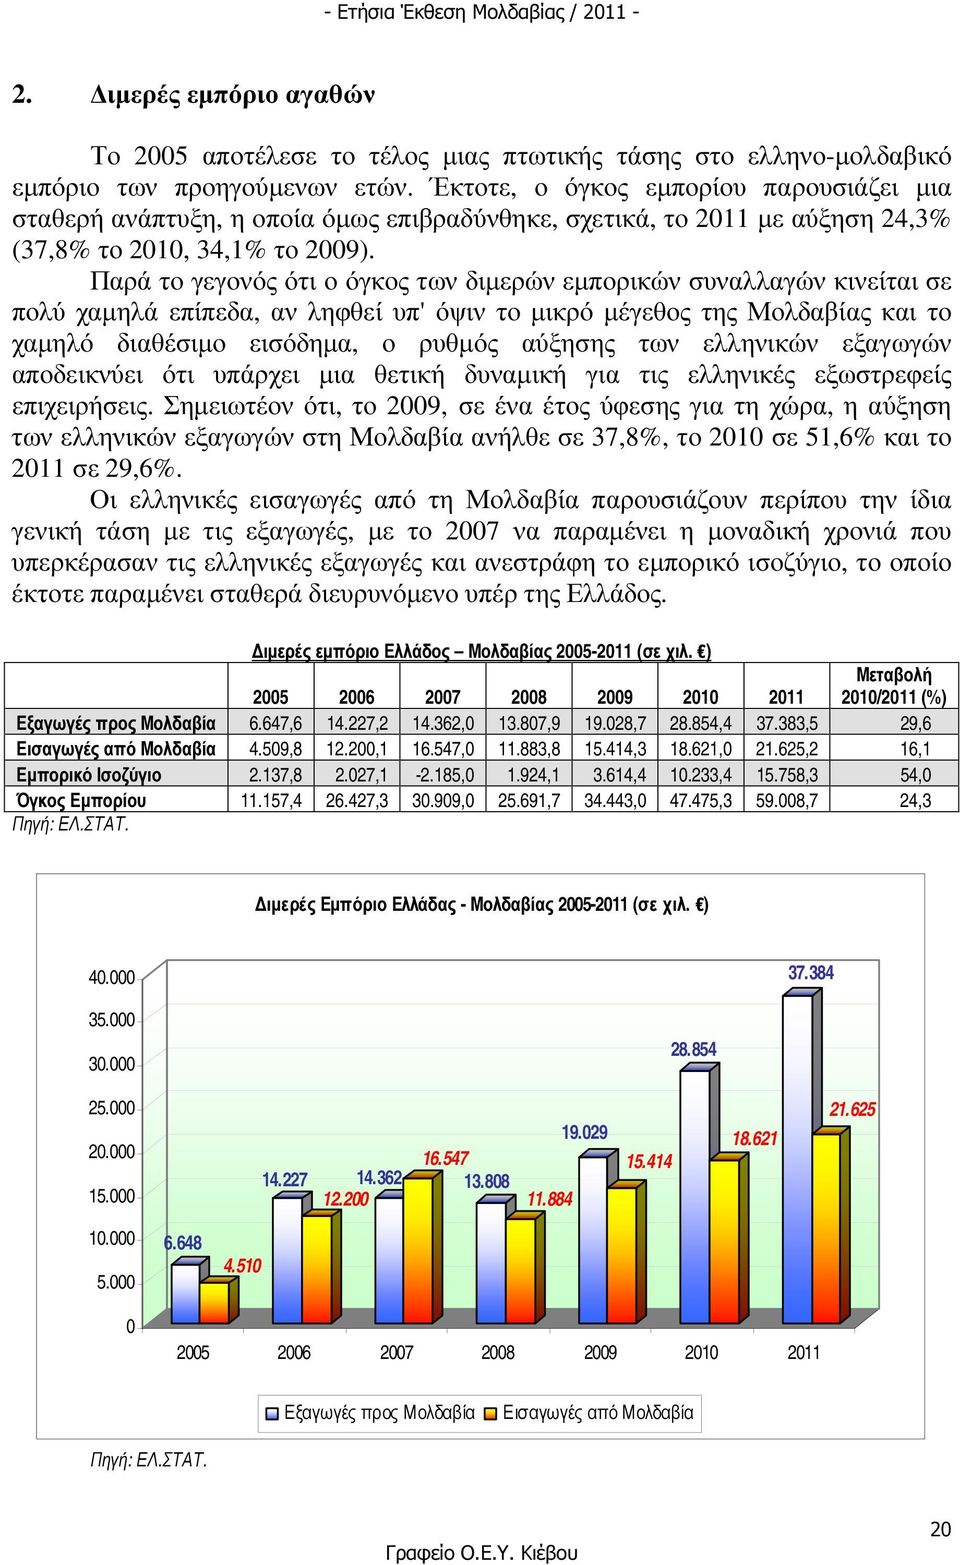 Παρά το γεγονός ότι ο όγκος των διµερών εµπορικών συναλλαγών κινείται σε πολύ χαµηλά επίπεδα, αν ληφθεί υπ' όψιν το µικρό µέγεθος της Μολδαβίας και το χαµηλό διαθέσιµο εισόδηµα, ο ρυθµός αύξησης των